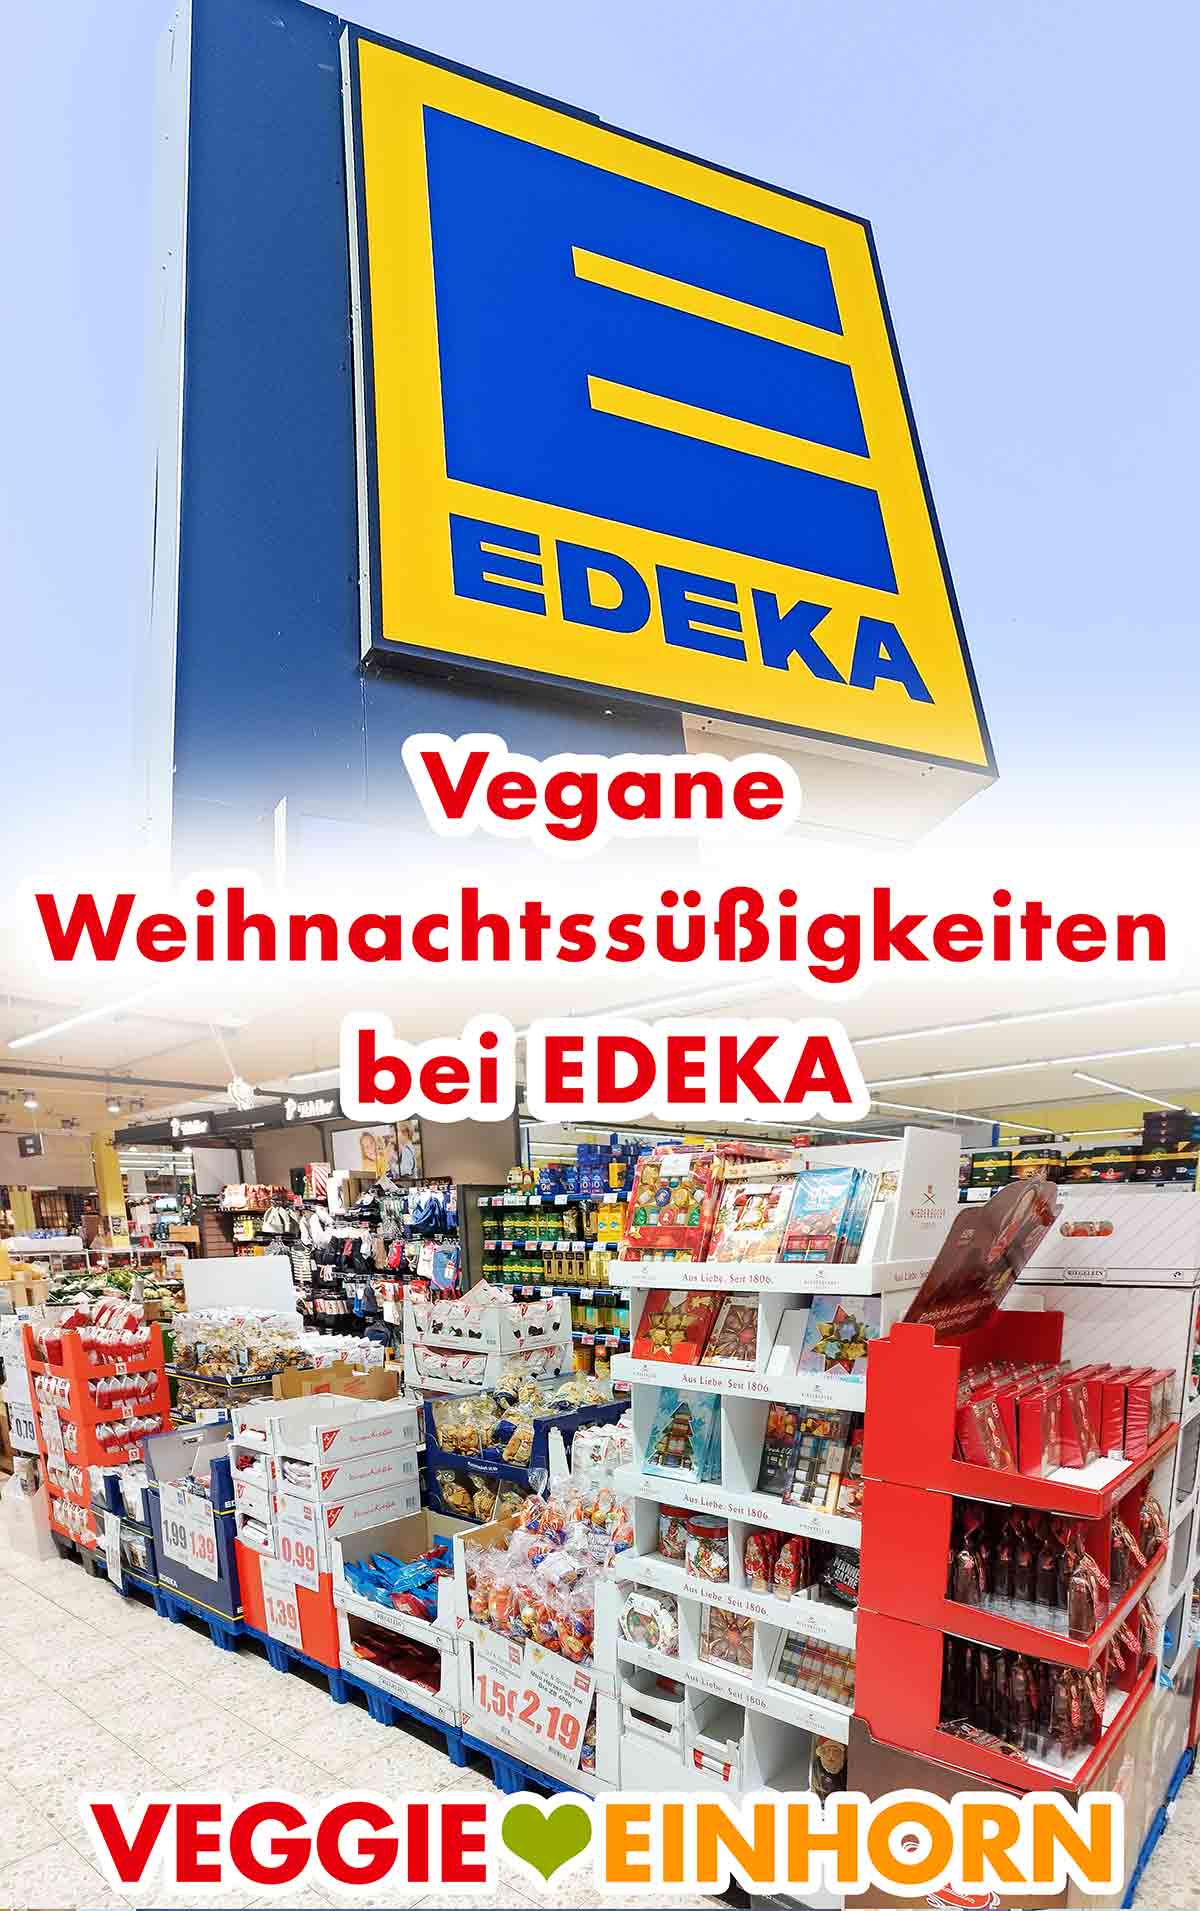 Vegane Weihnachtssüßigkeiten bei EDEKA